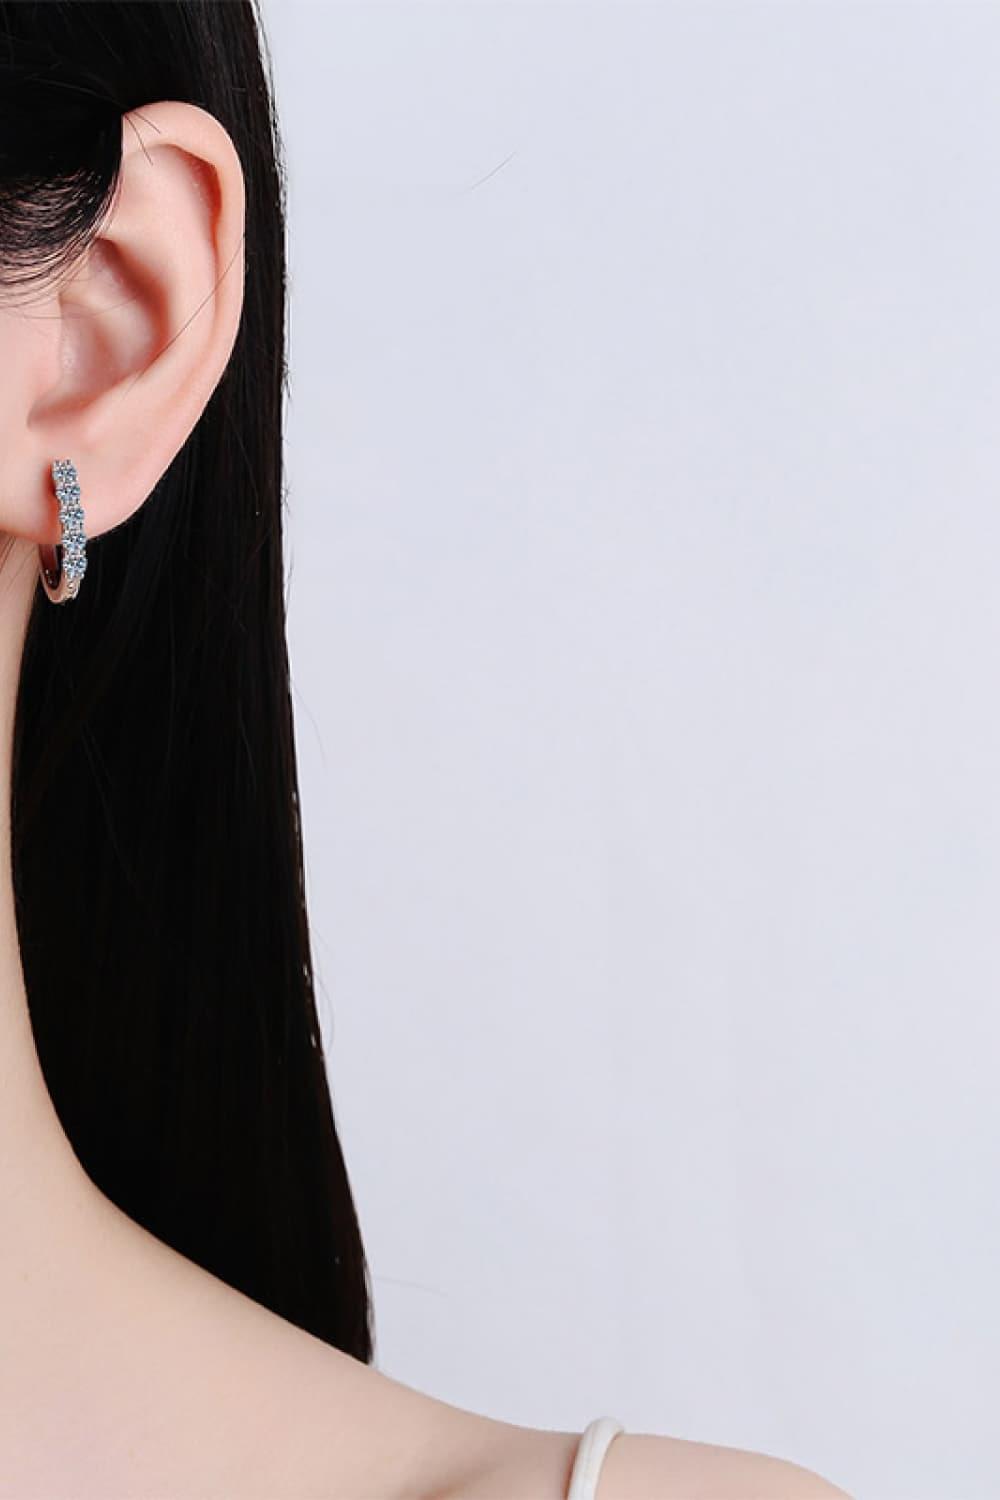 1 Carat Moissanite Hoop Earrings - Earrings - FITGGINS